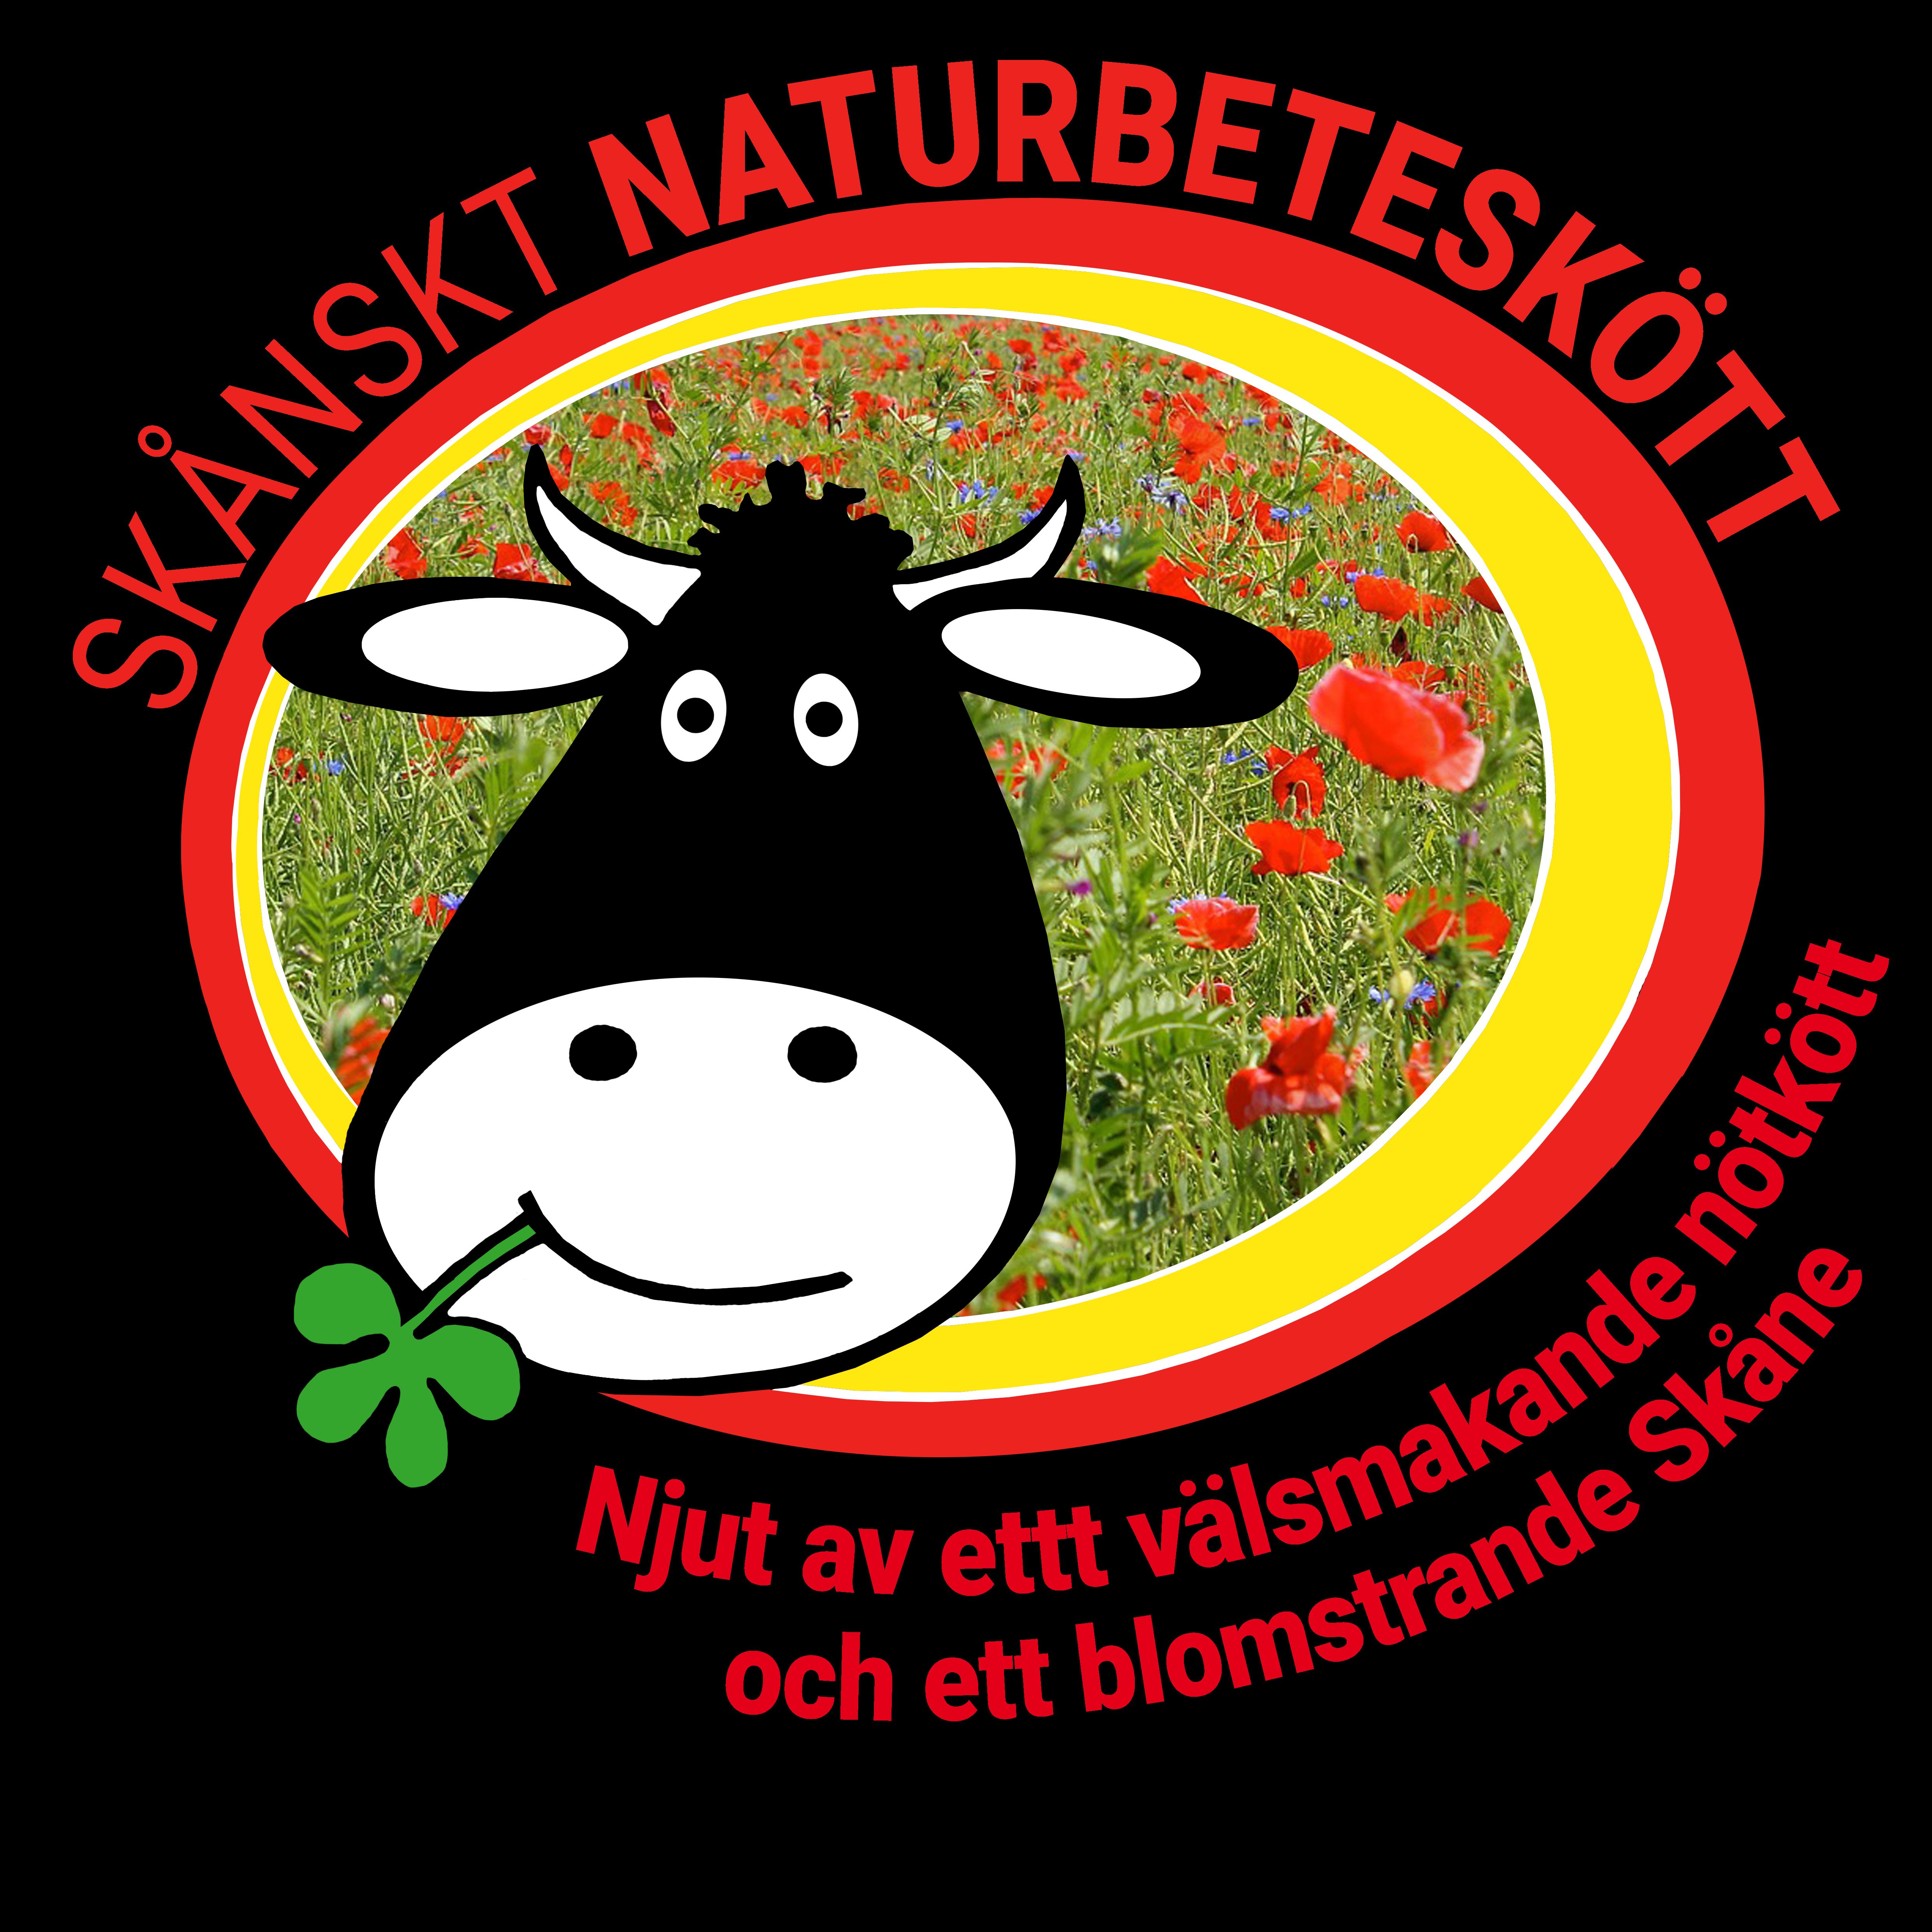 SKÅNSKT NATURBETESKÖTT Njut av ett välsmakande nötkött och ett blomstrande Skåne